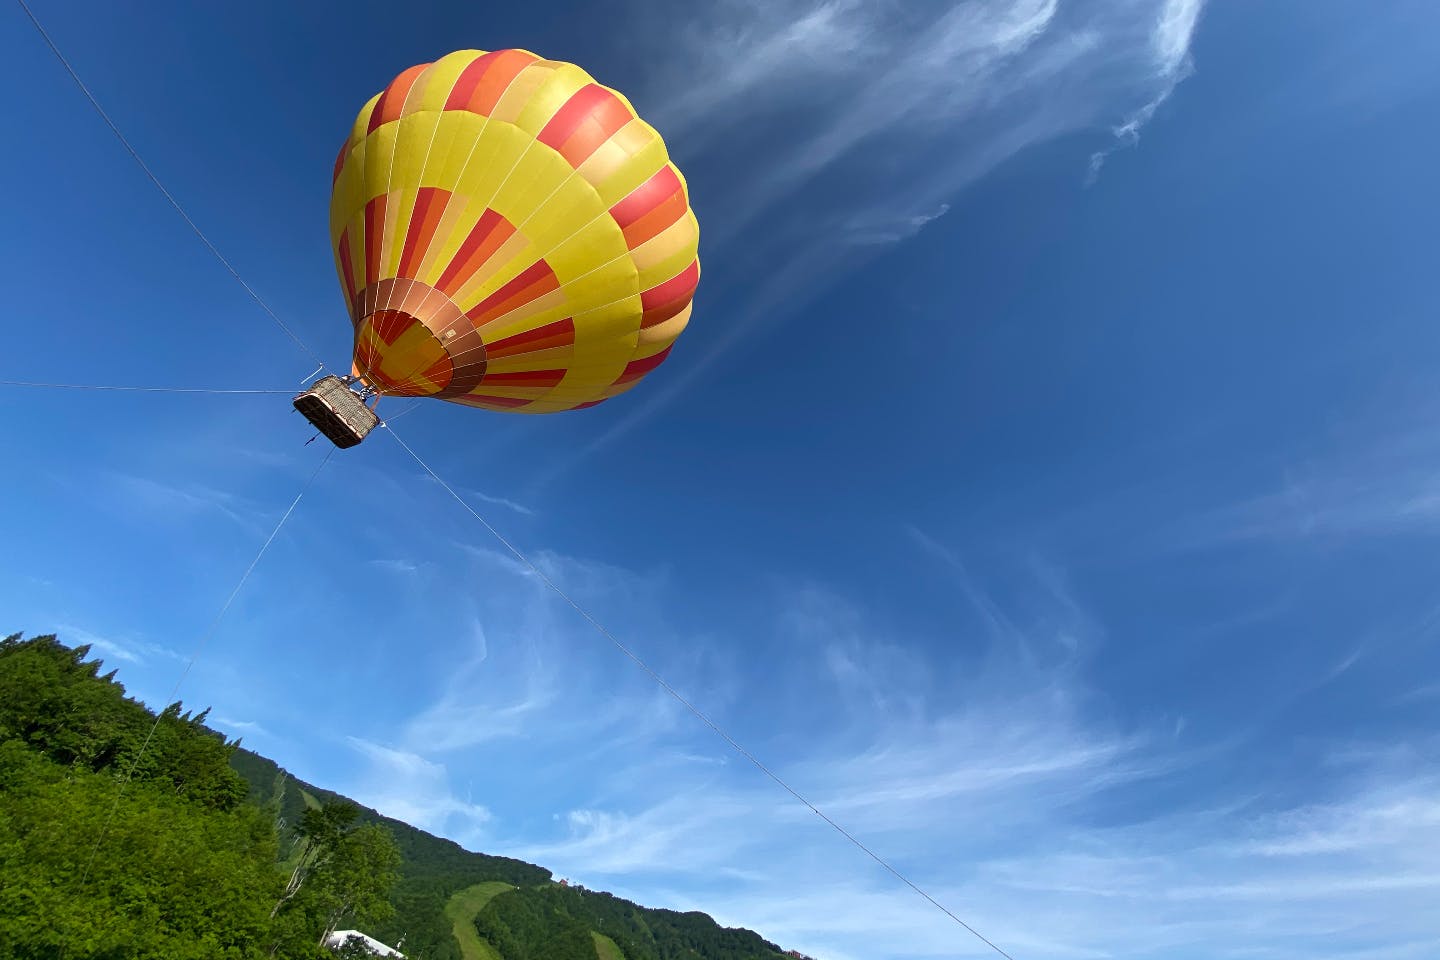 【岩手・夏油高原・熱気球】一生に一度は乗ってみたい！熱気球体験プラン